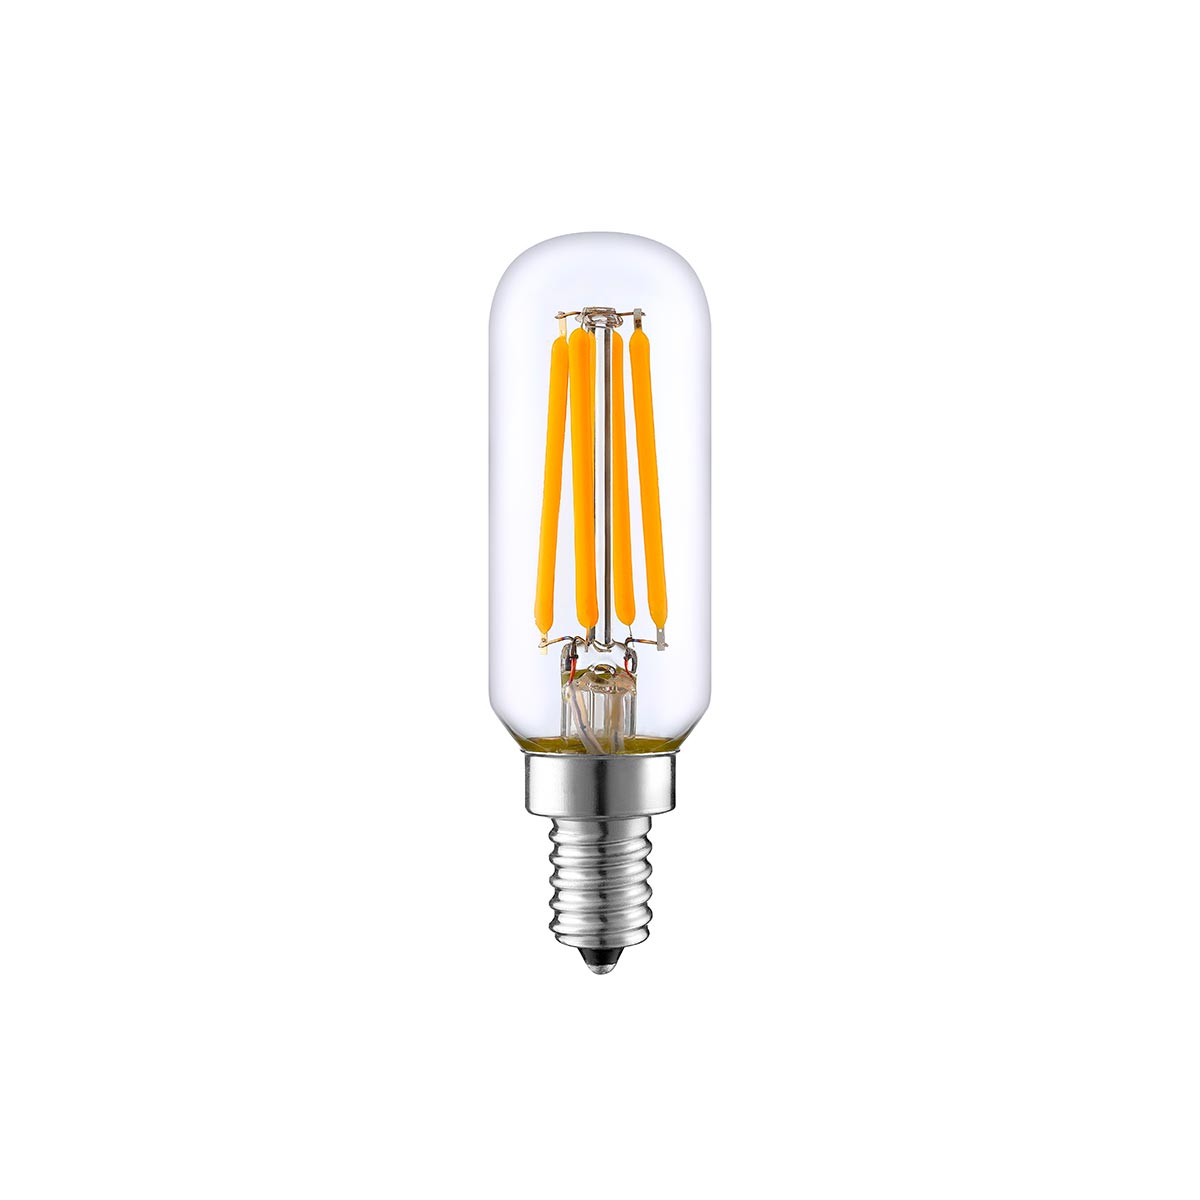 Lot de 100 Ampoule filament LED E14 blanc chaud PLUTON T25 4W H9cm